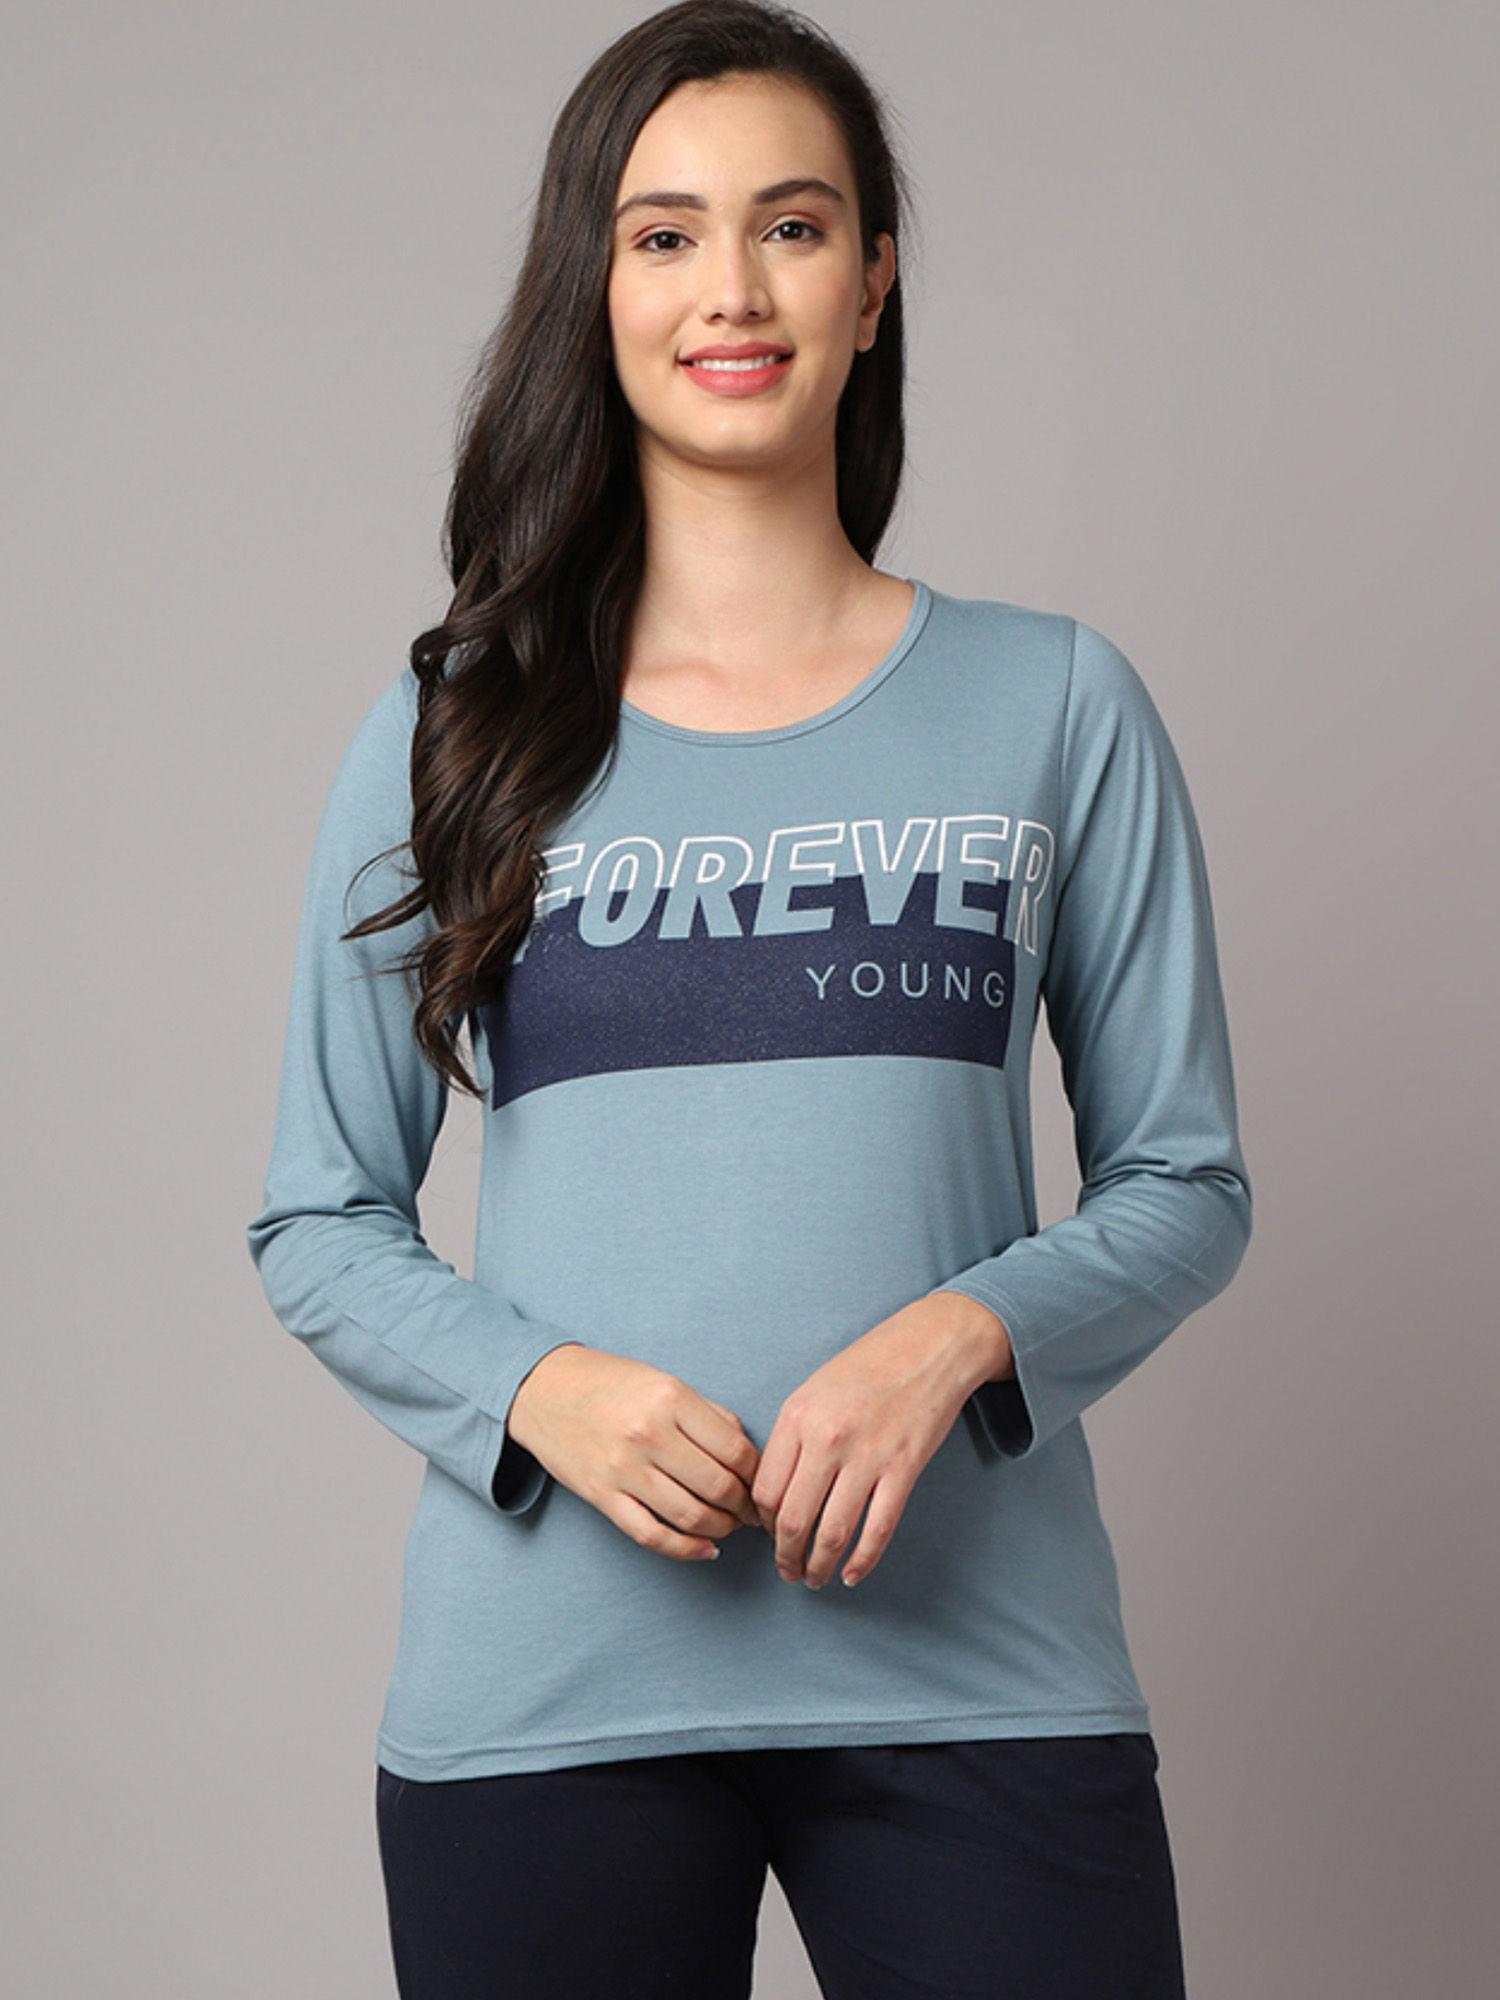 women's blue printed tshirt